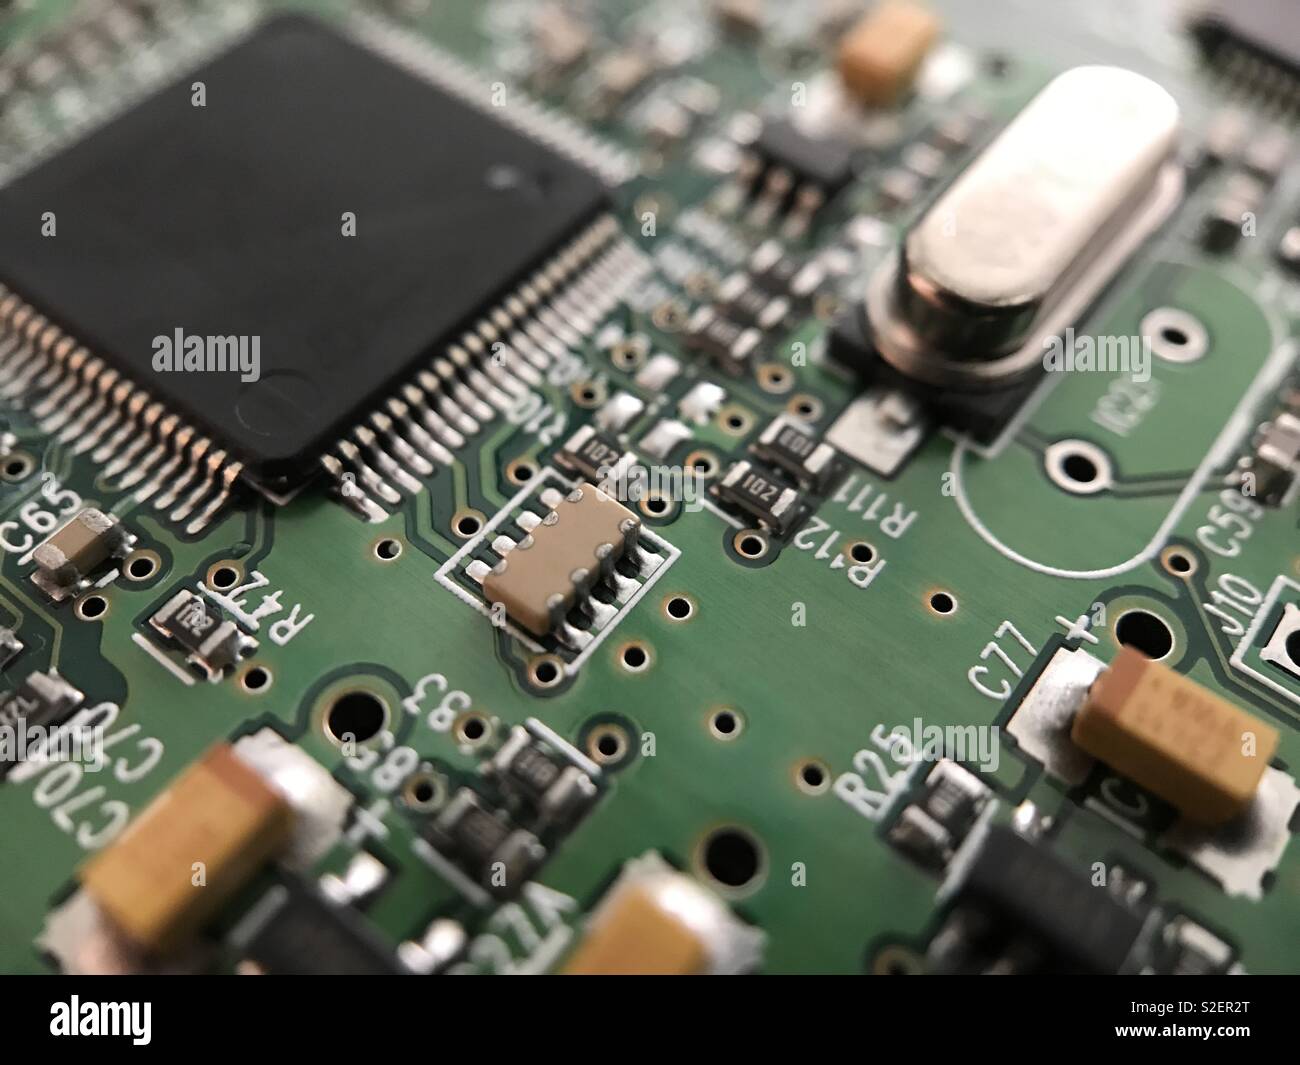 Un circuit électronique du disque dur d'un ordinateur est illustré de près  Photo Stock - Alamy